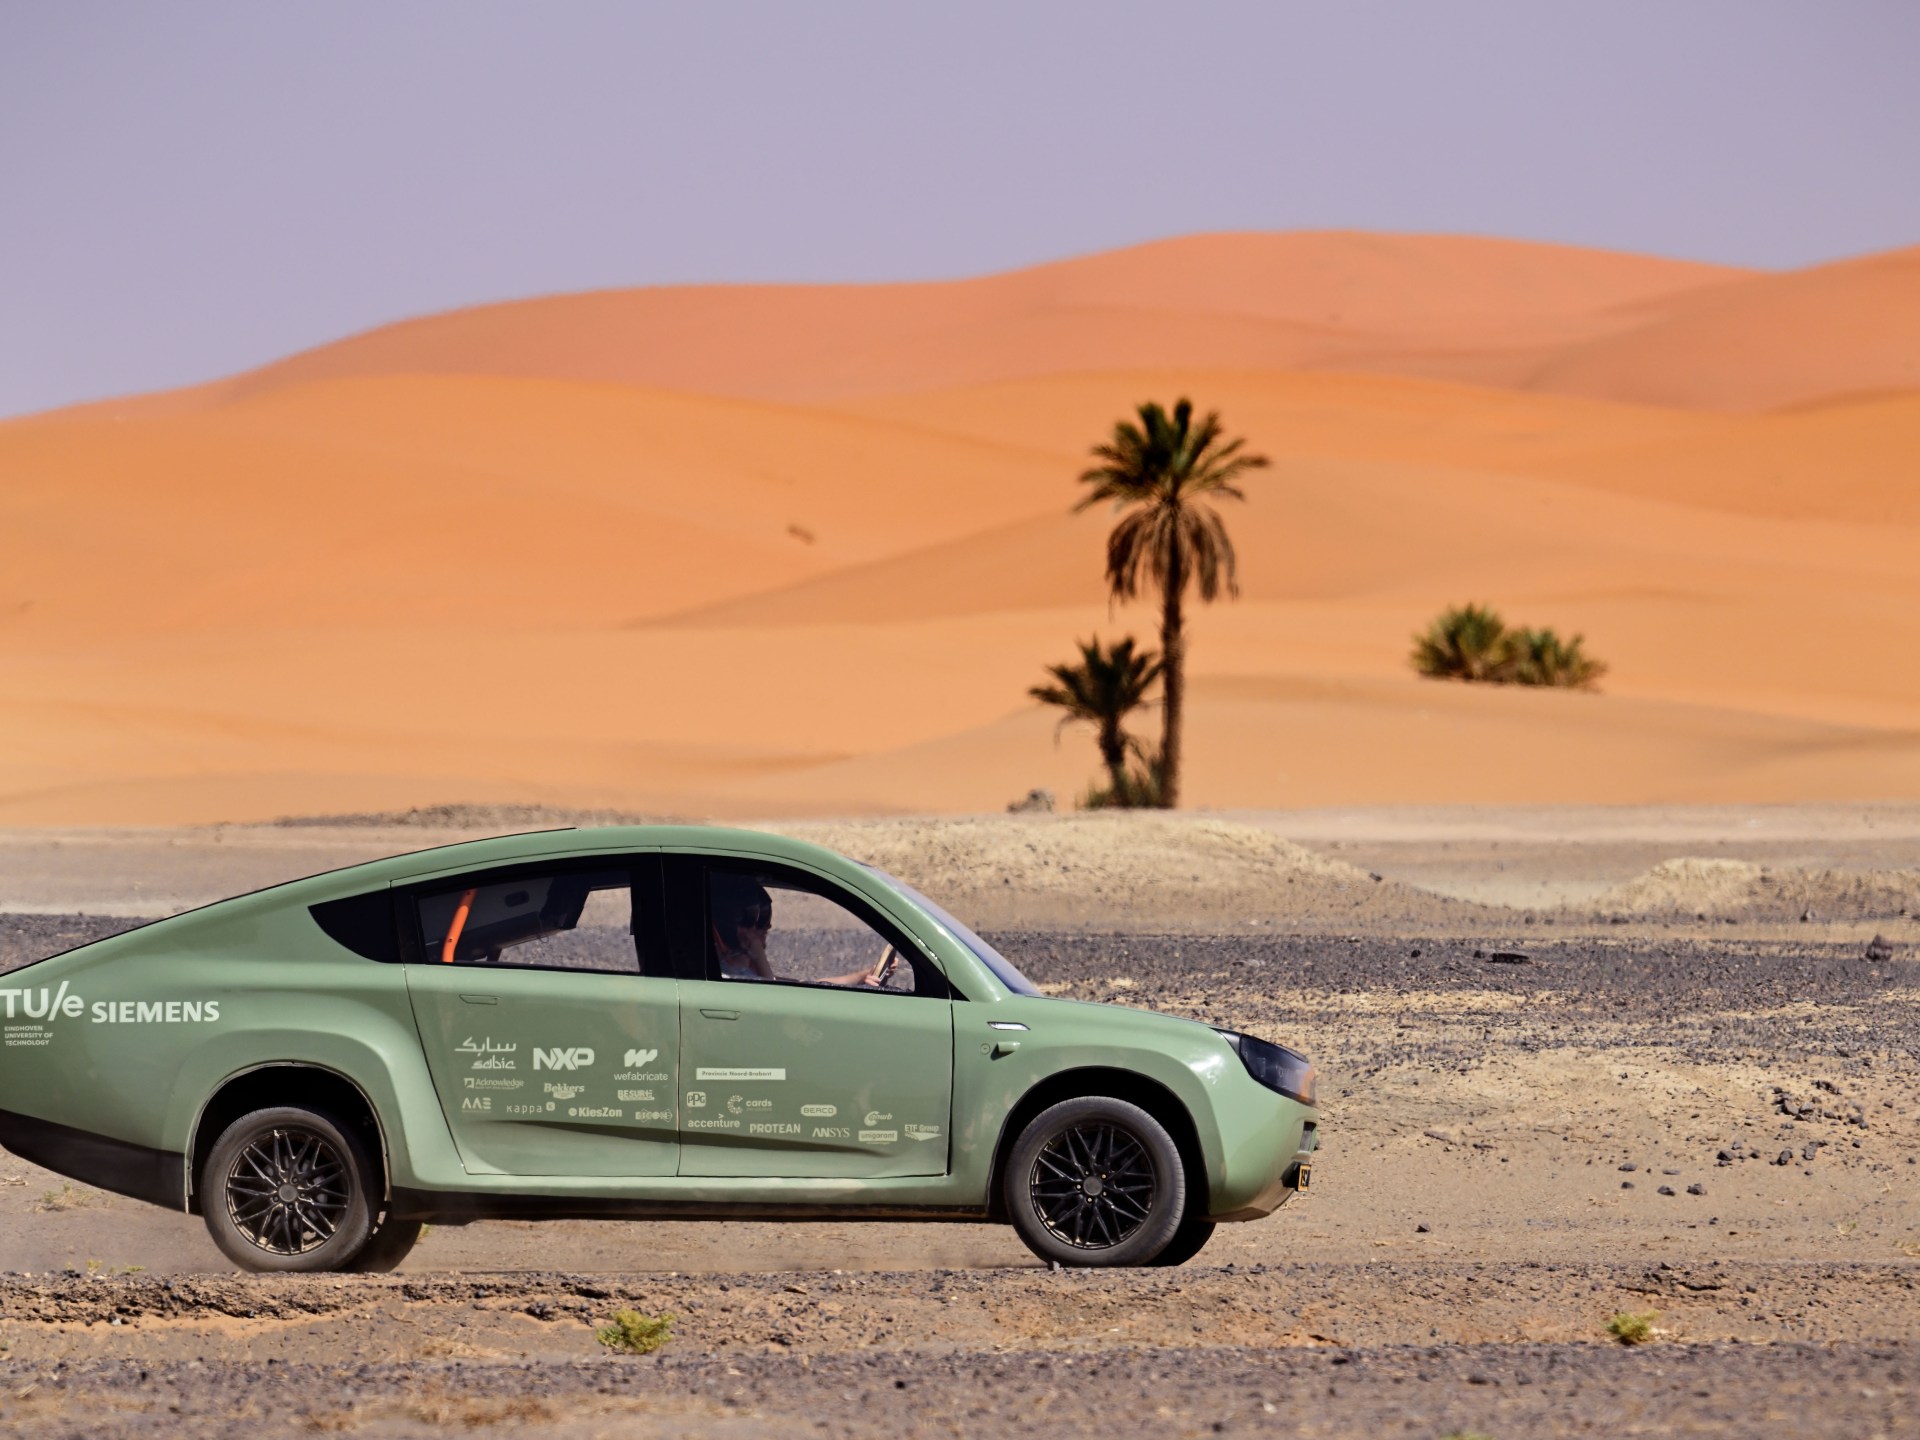 تجريب أول سيارة دفع رباعي تعمل بالطاقة الشمسية في المغرب | تكنولوجيا – البوكس نيوز